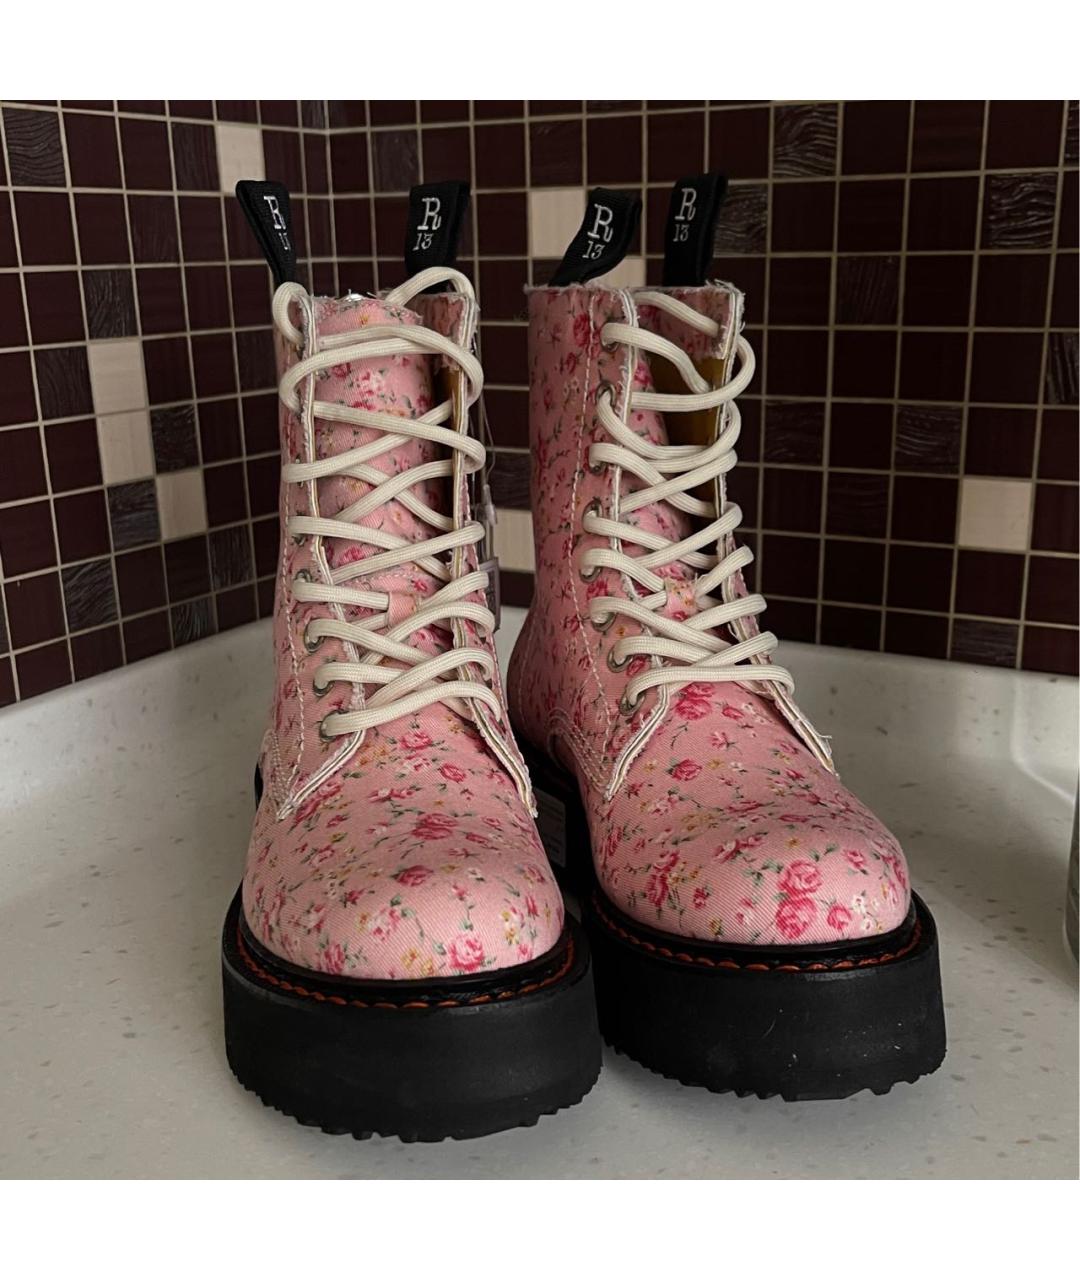 R13 Розовые текстильные ботинки, фото 2